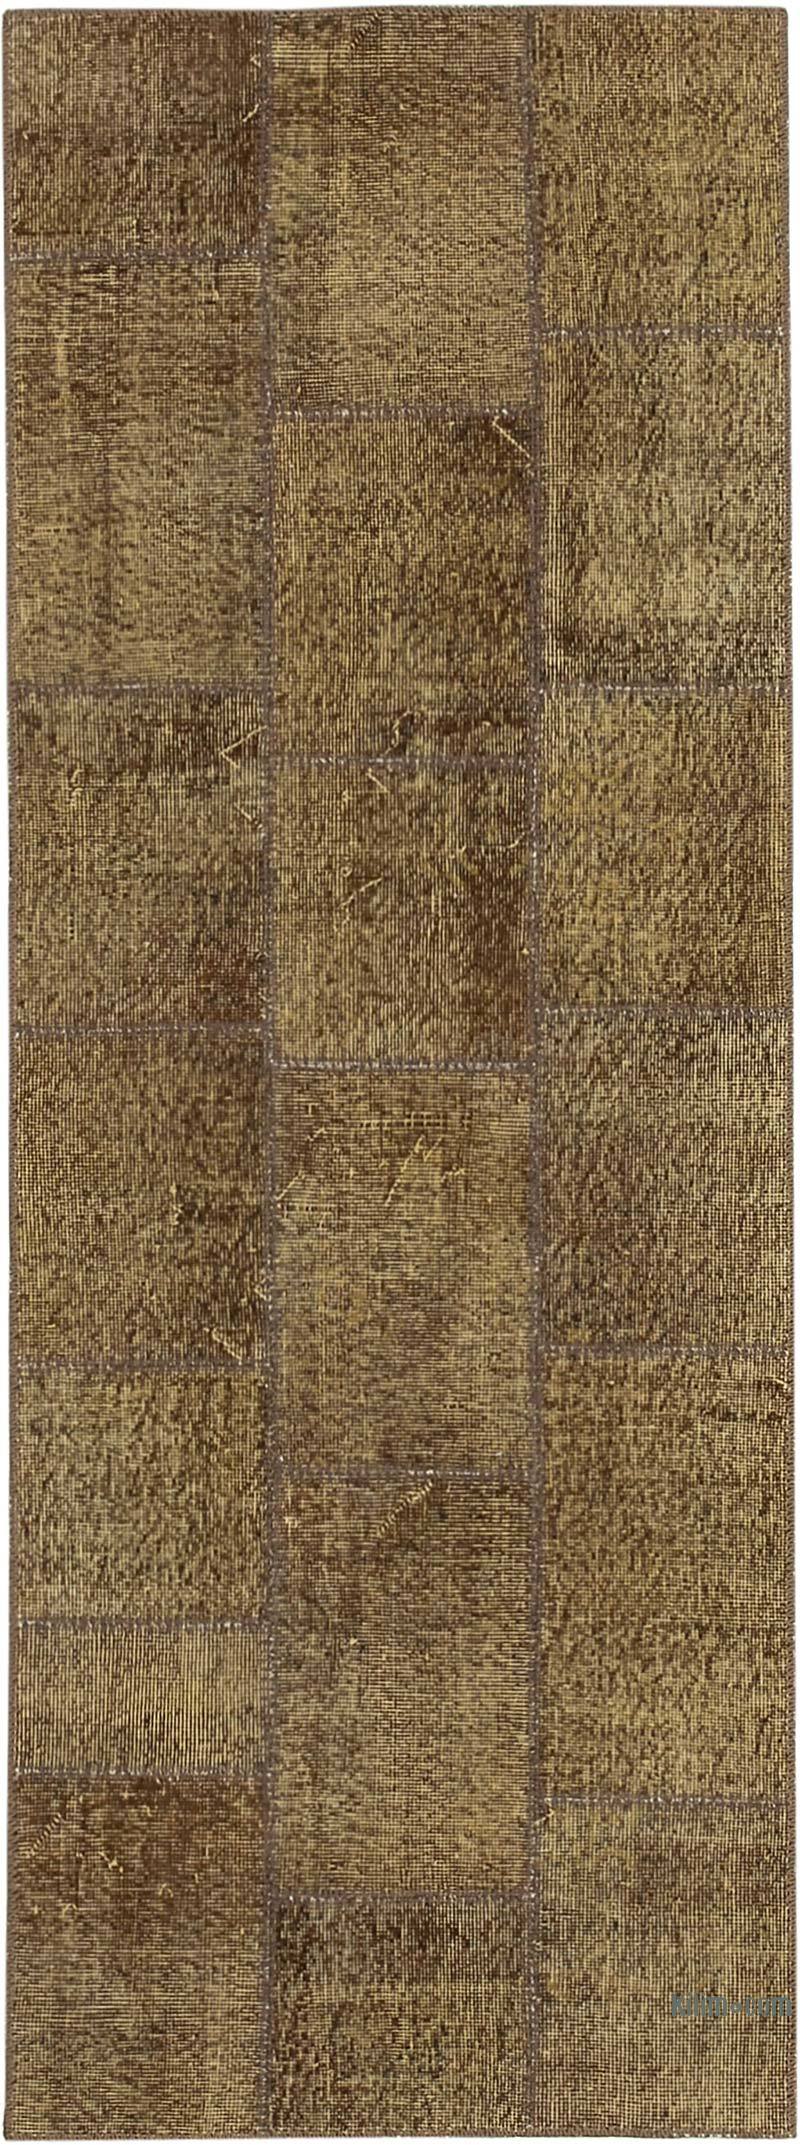 Kahverengi Boyalı Patchwork Halı - 86 cm x 232 cm - K0049667